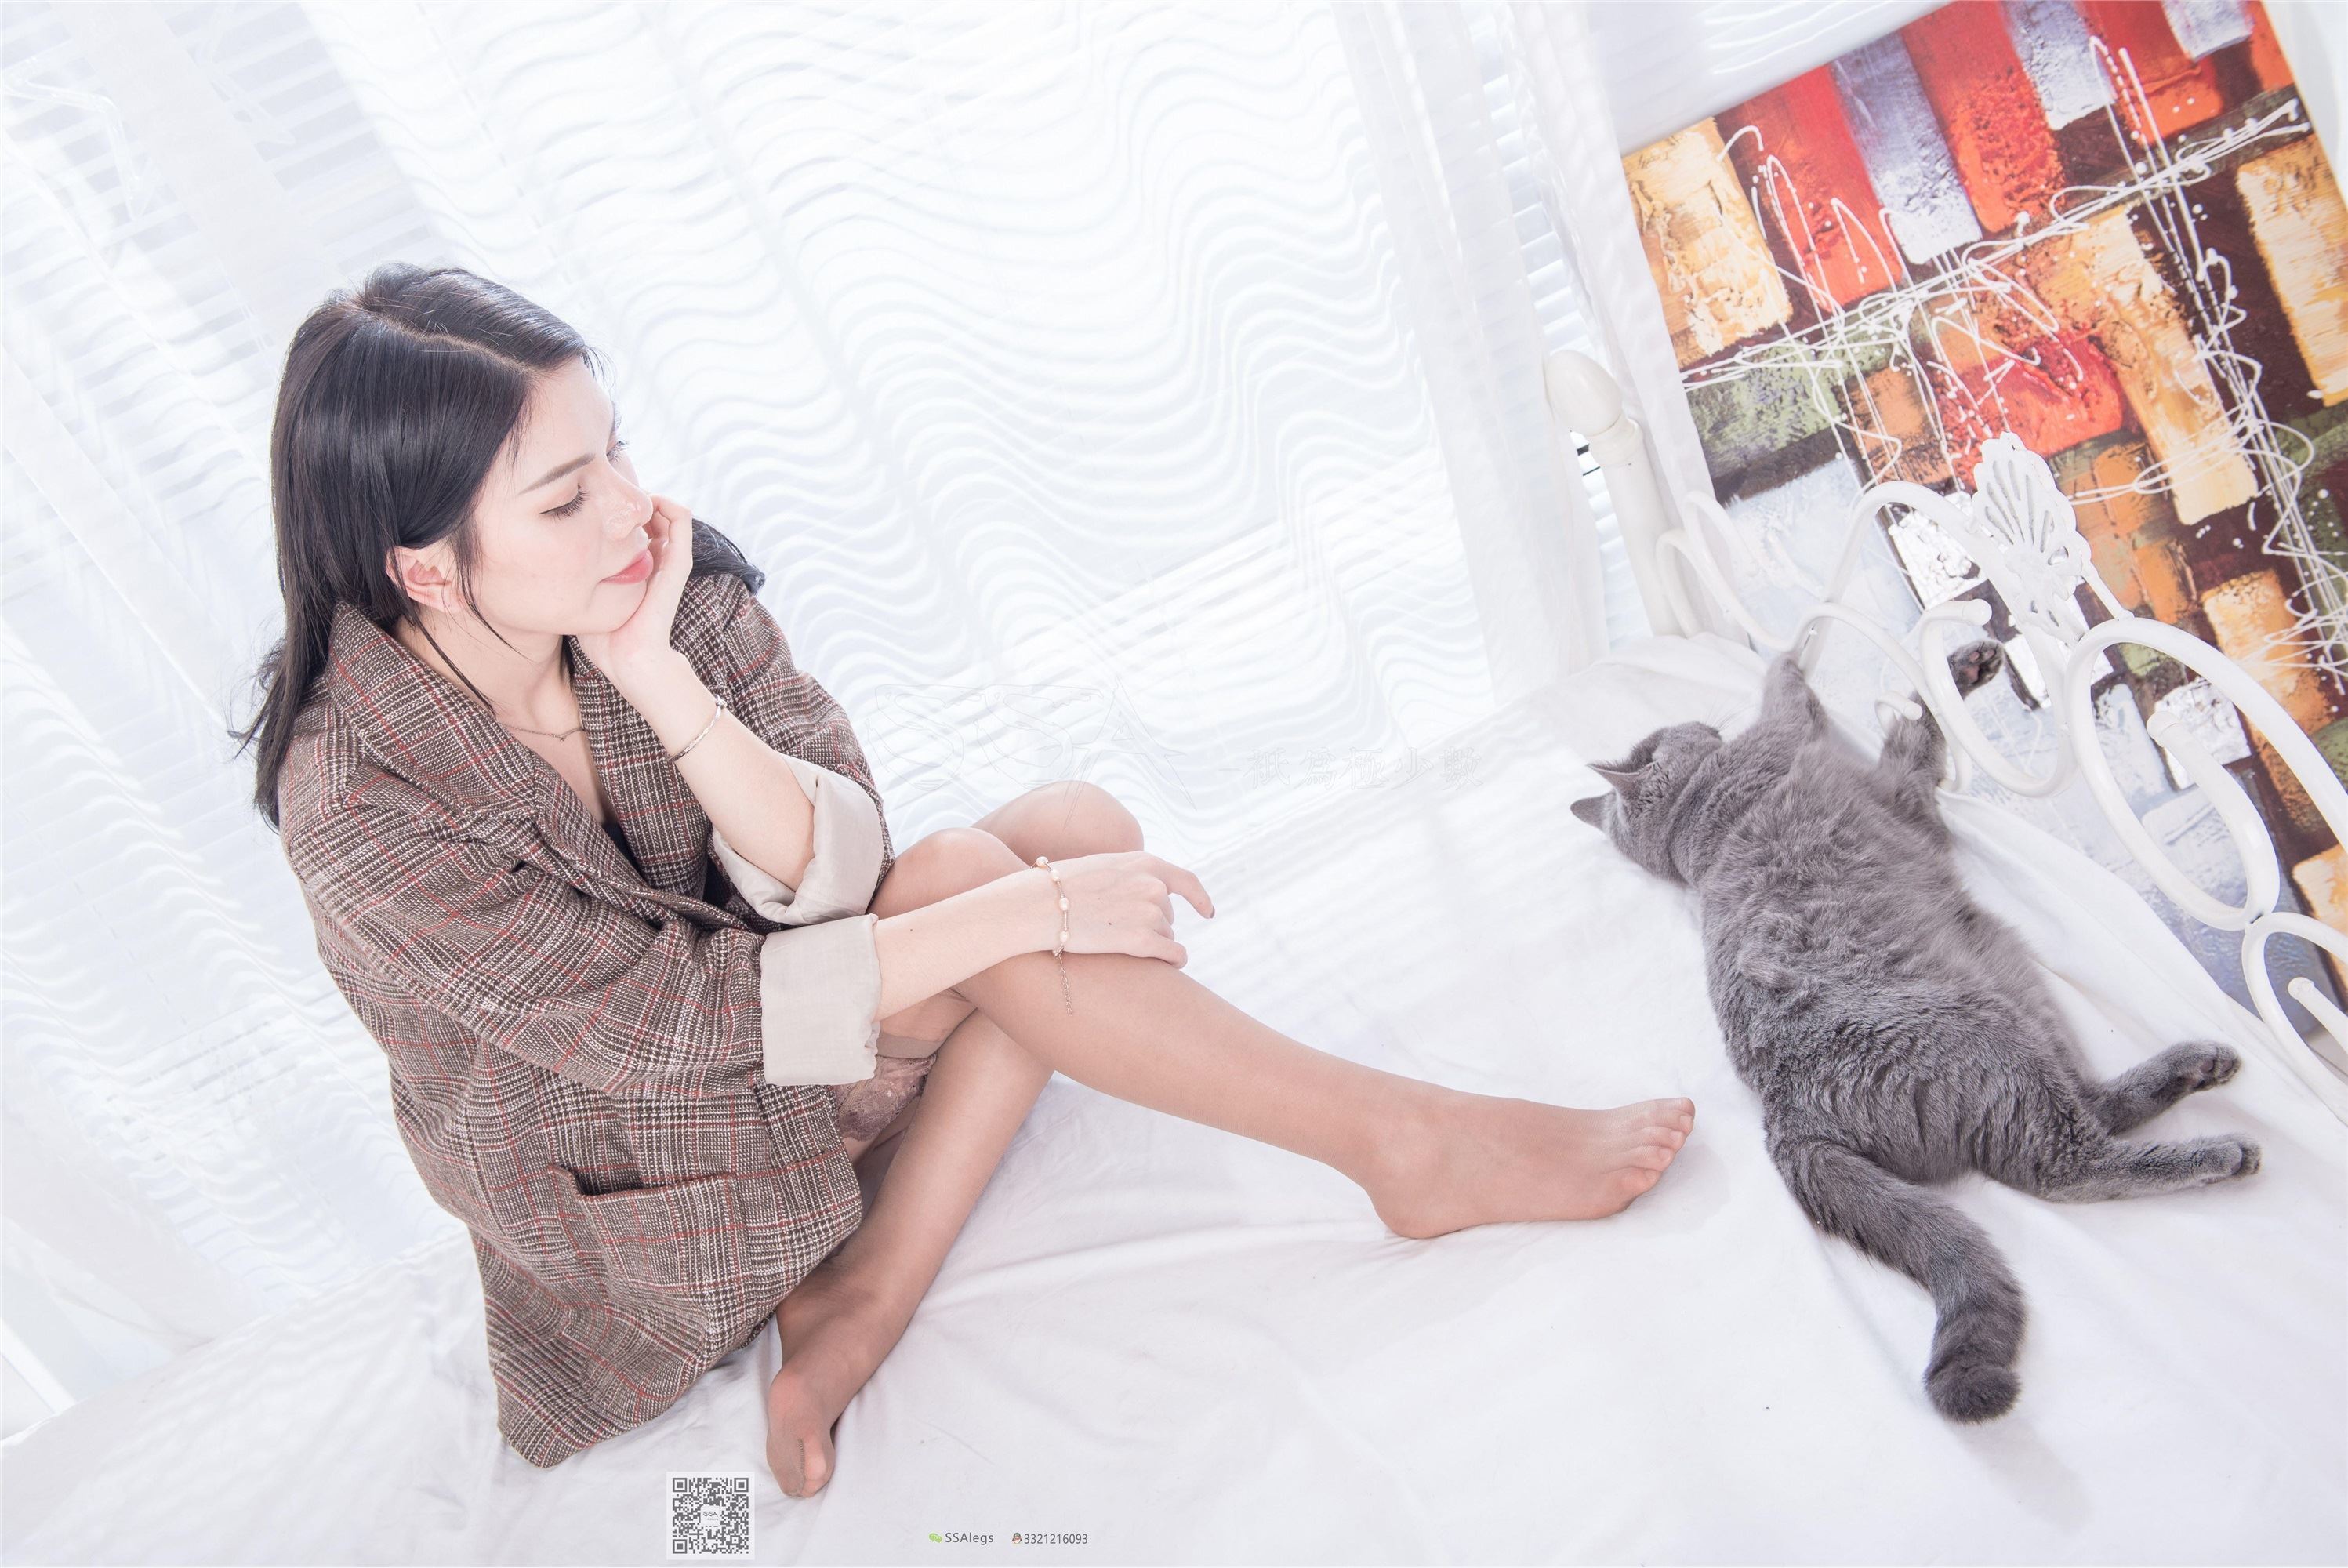 SSA silk society no.036 story of mixed race beauty Zhimo and cat